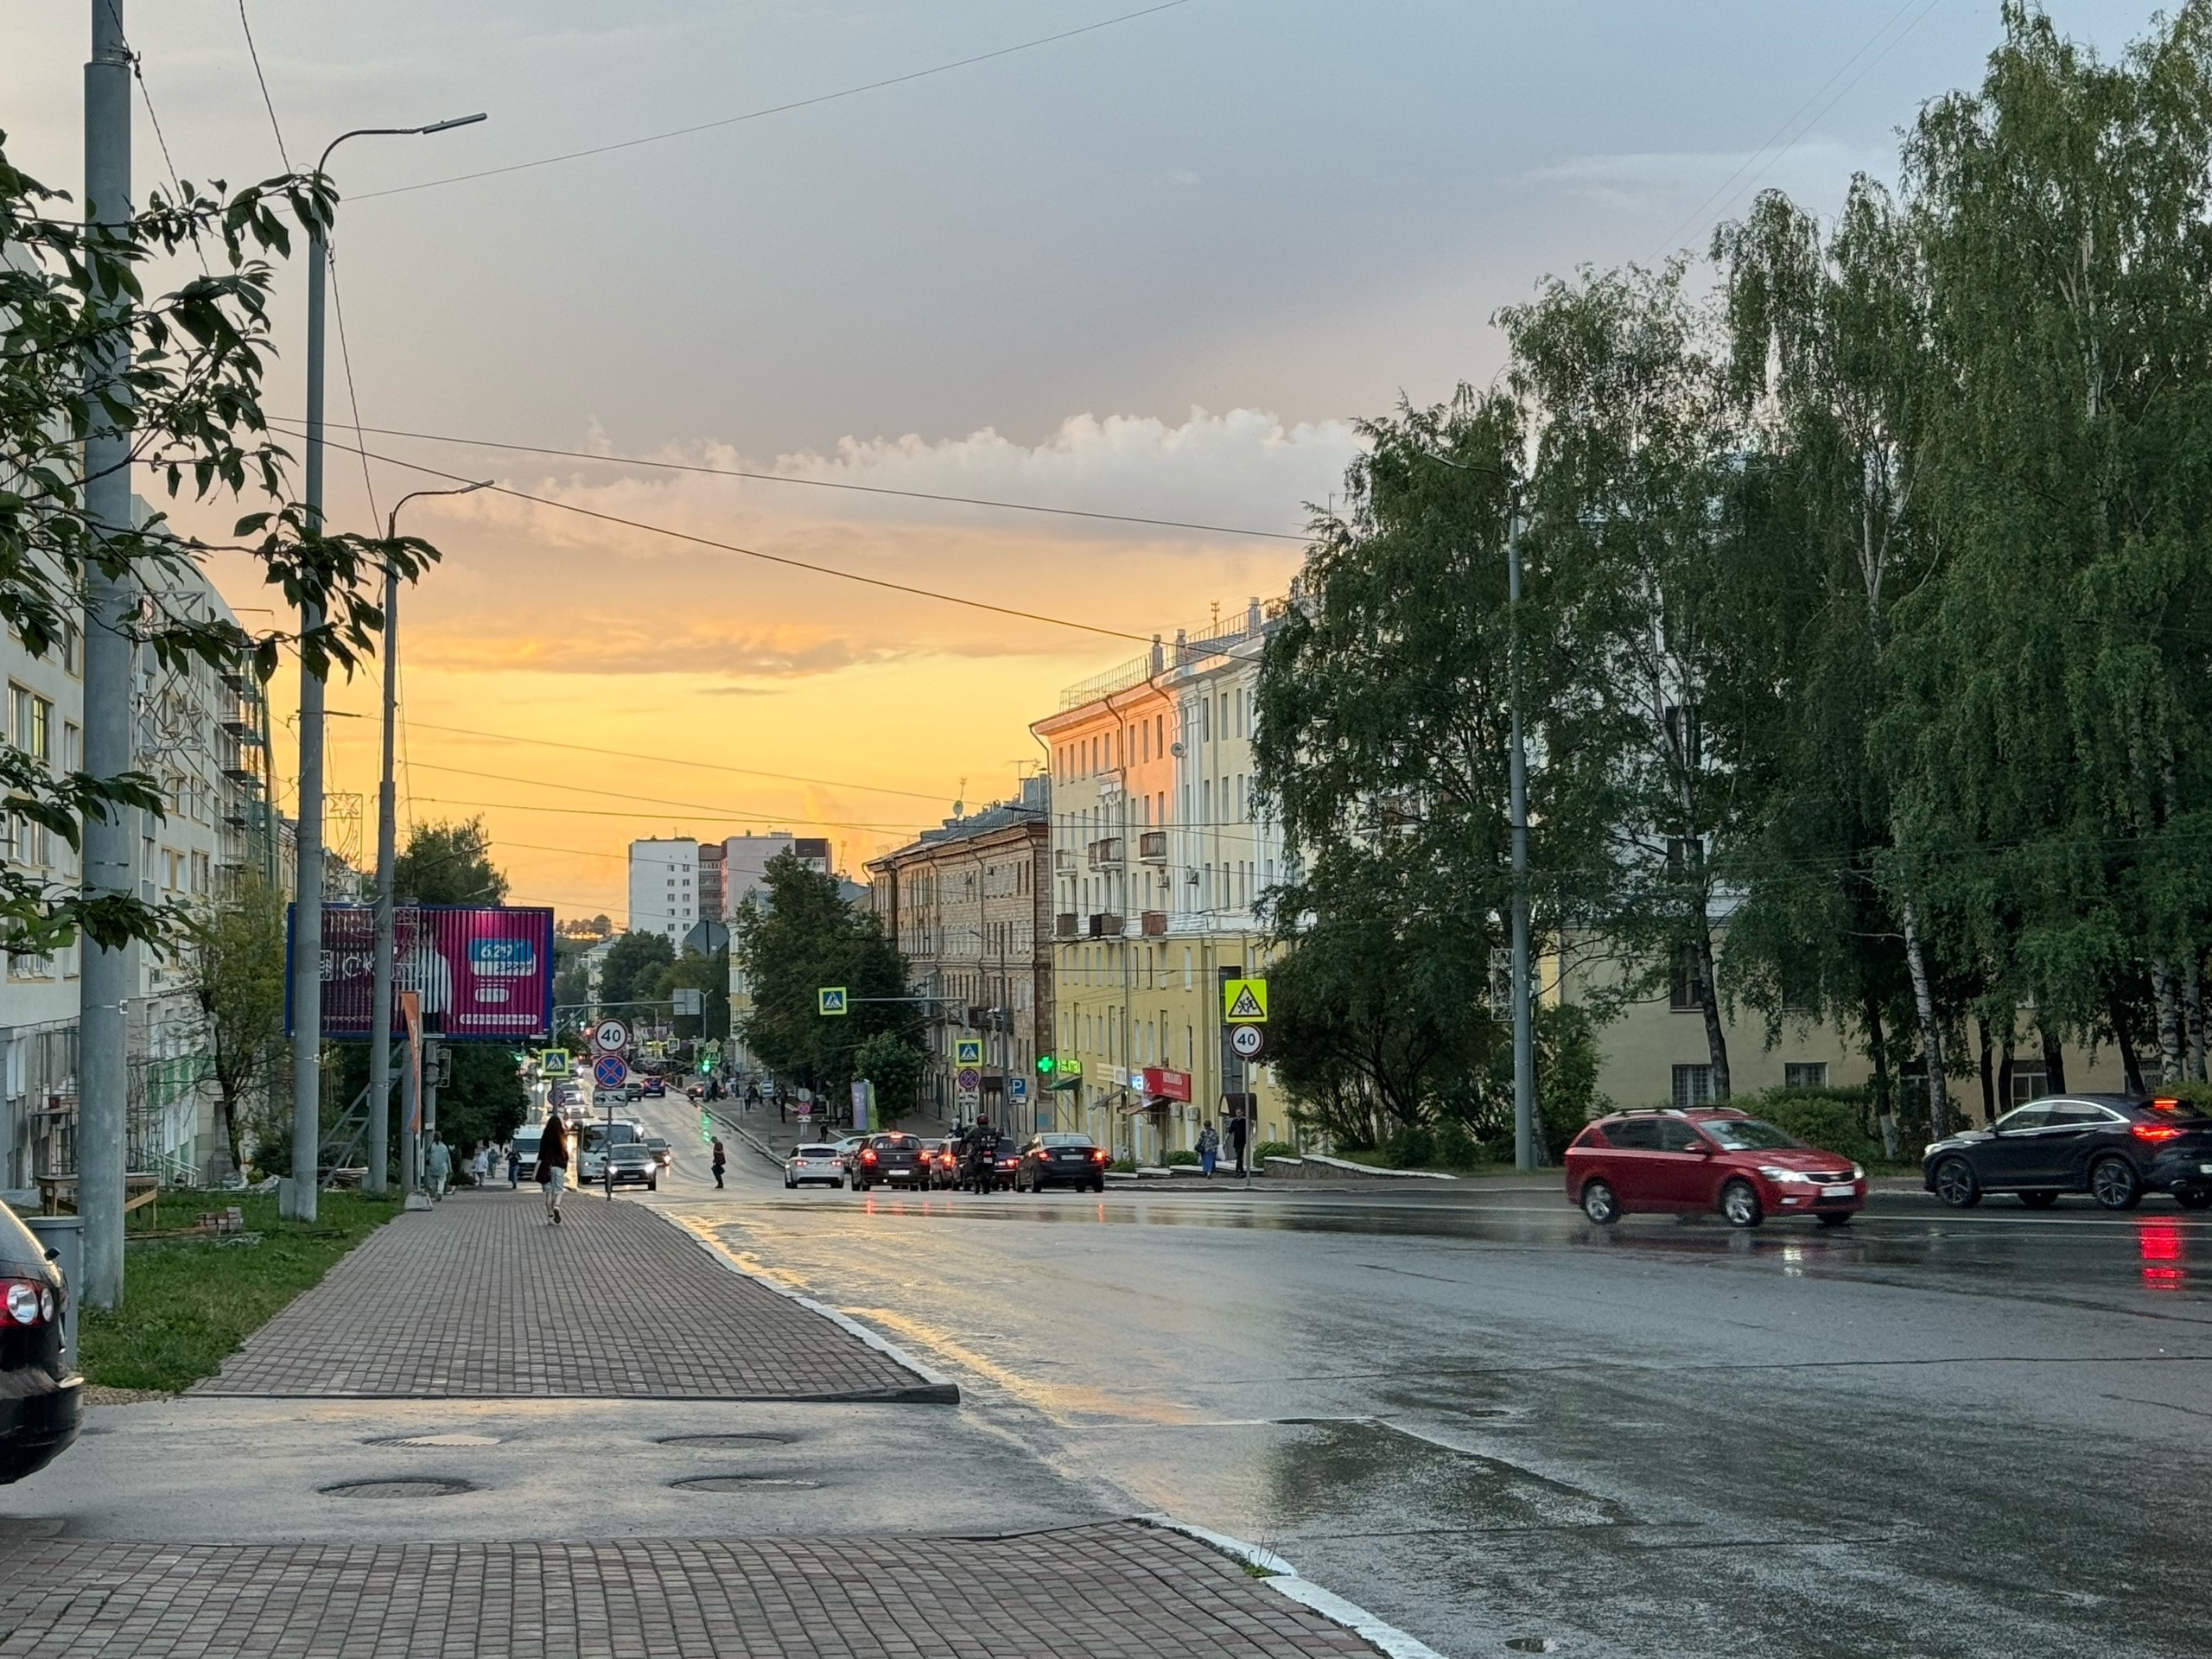 Дожди с грозами: какой будет погода в Кирове 5-7 августа